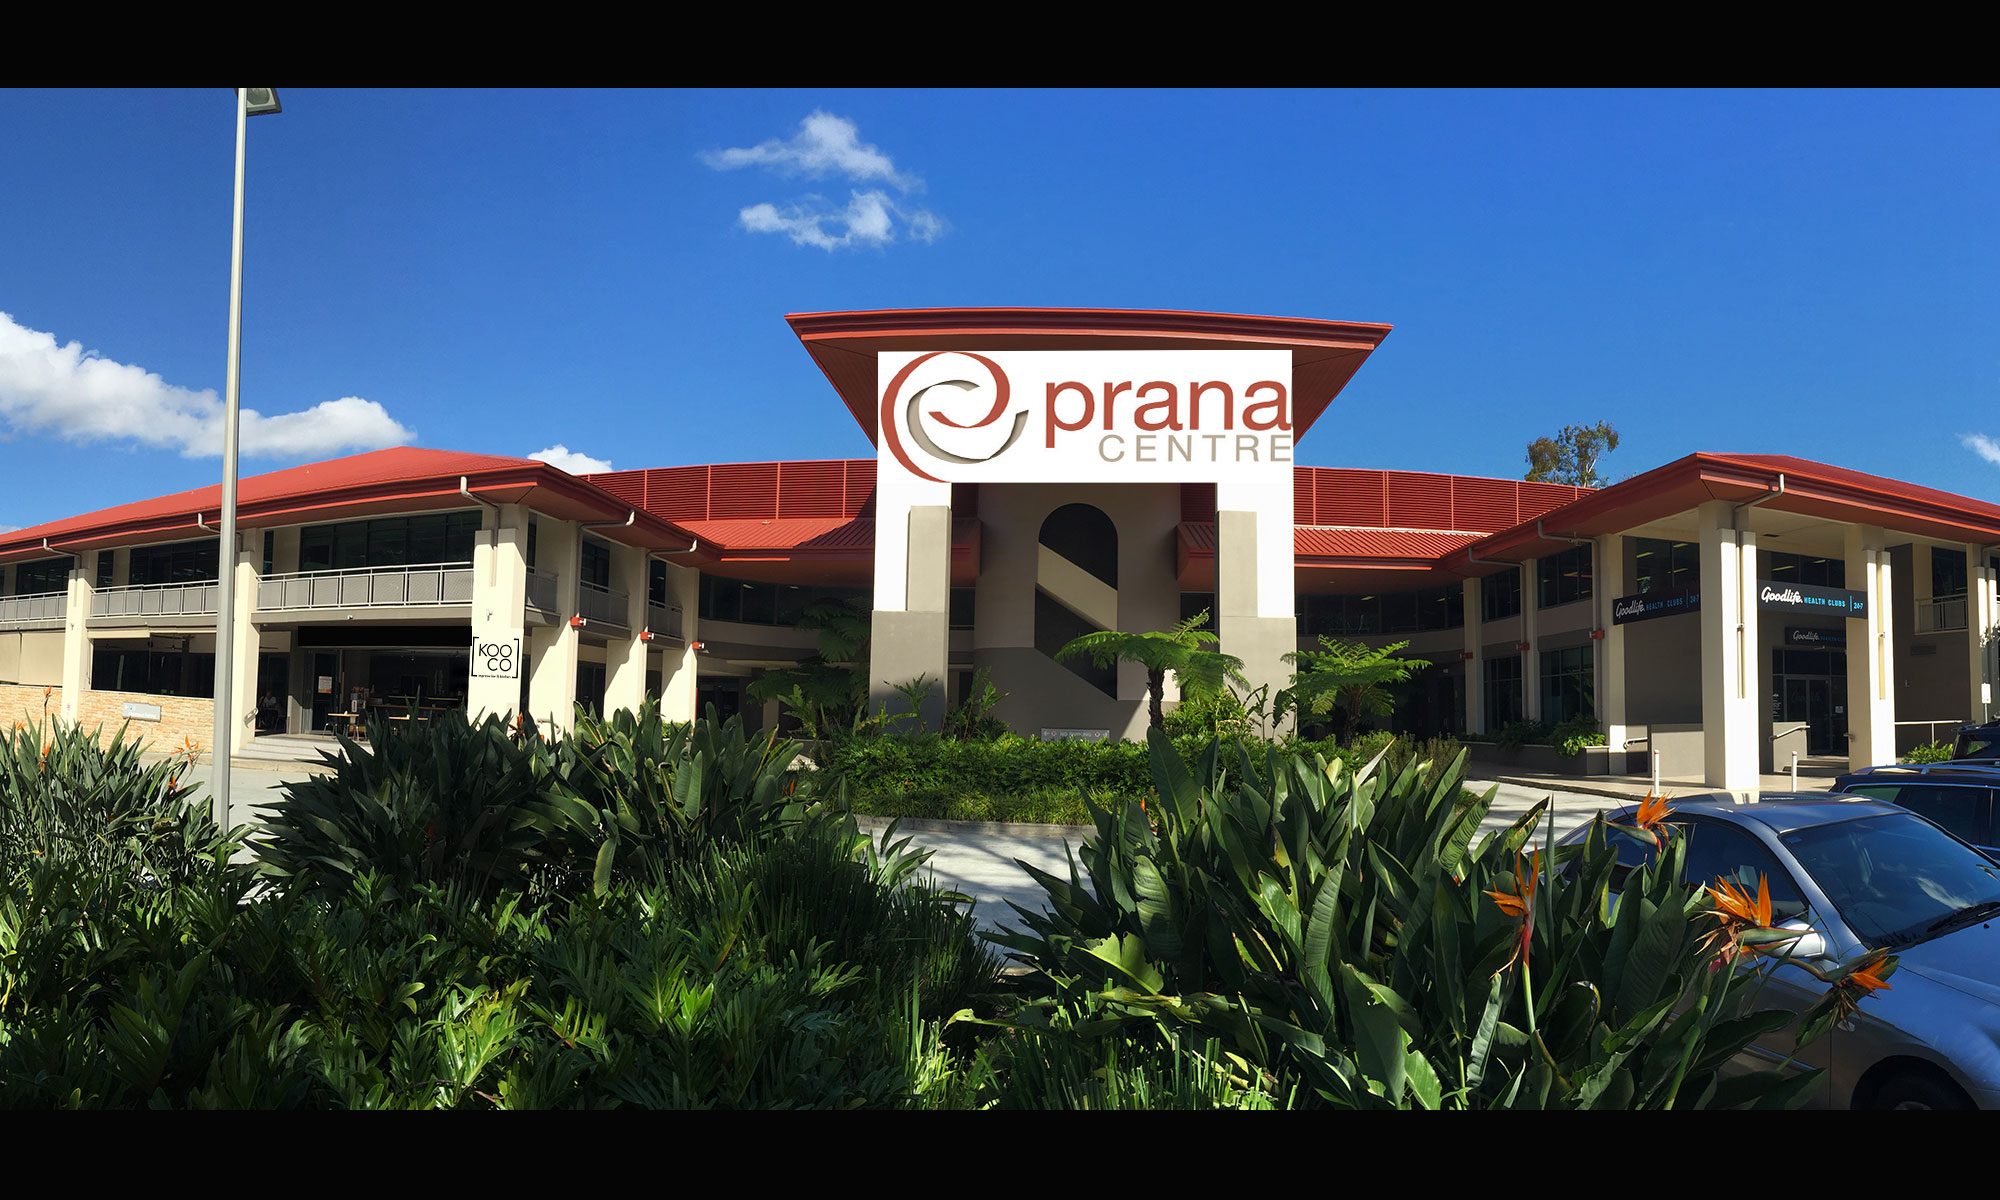 The Prana Centre